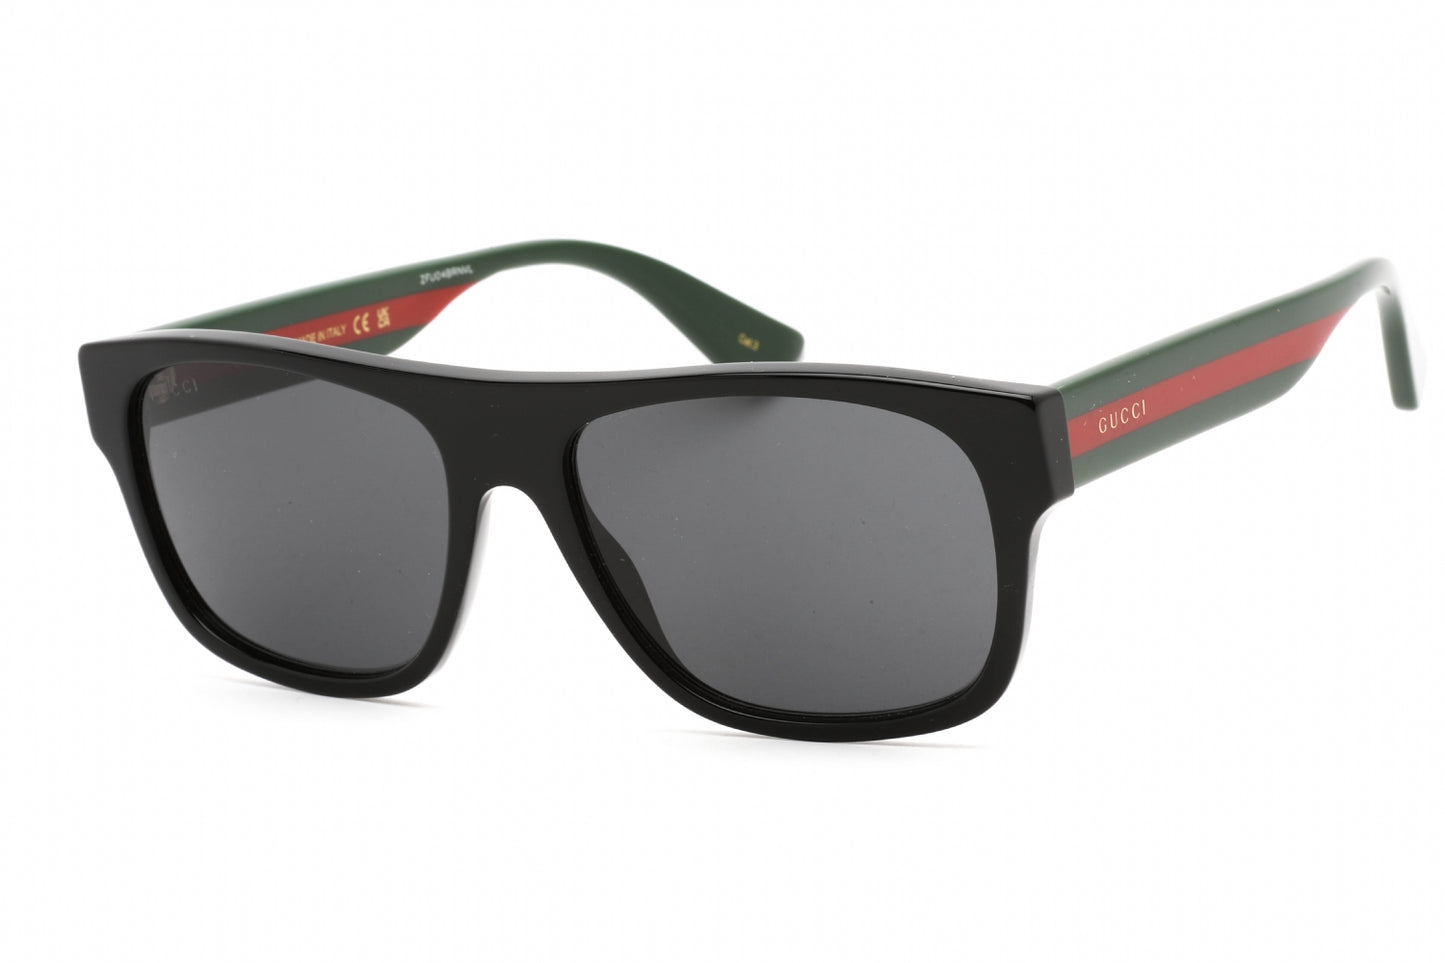 Gucci GG0341S-001 56mm New Sunglasses